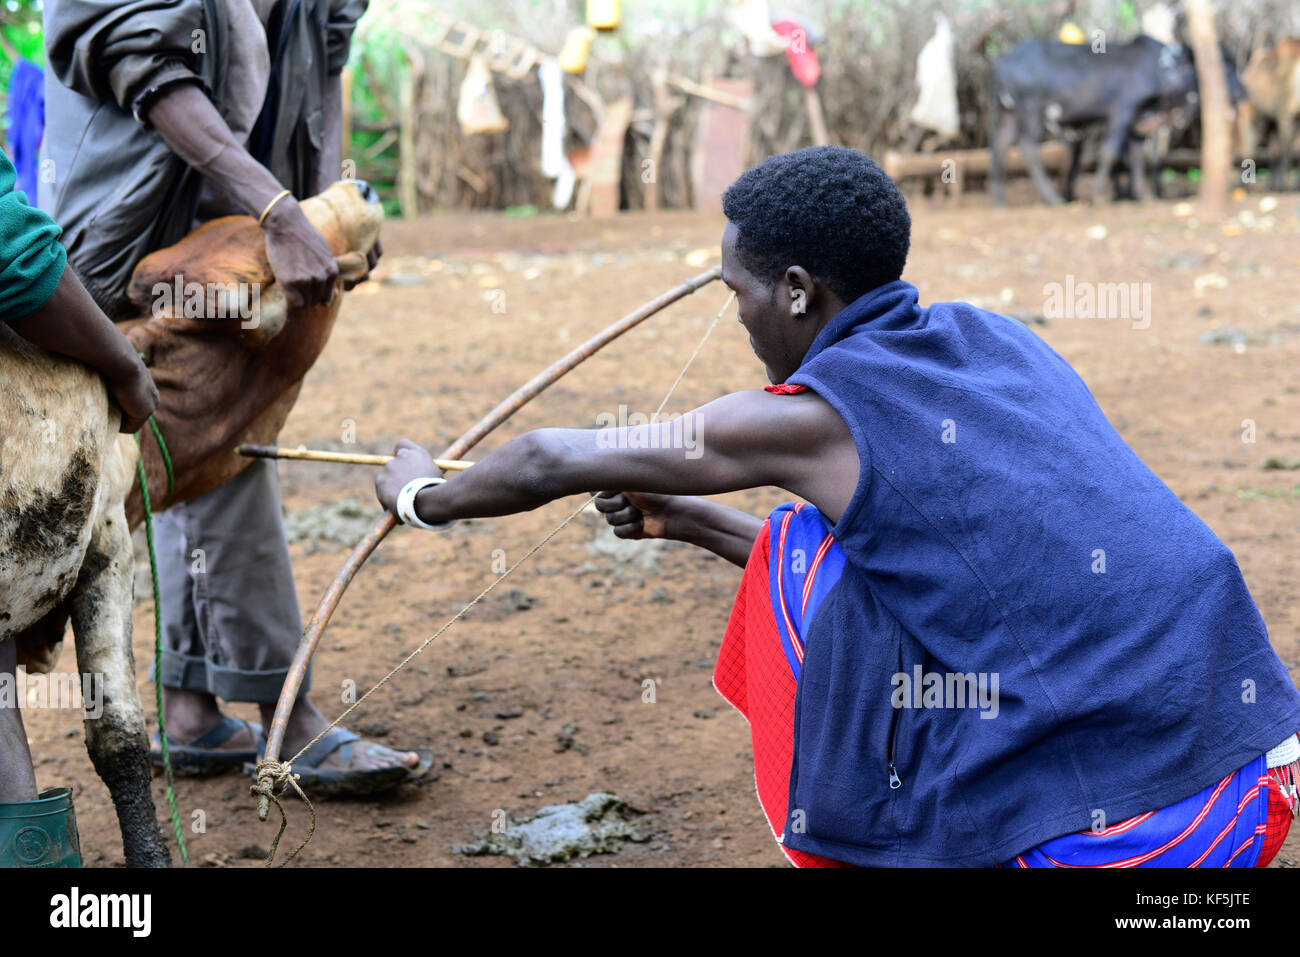 los-hombres-masai-extraer-sangre-de-la-vena-en-el-cuello-de-la-vaca-desde-el-orificio-realizado-con-la-flecha-en-el-norte-de-tanzania-kf5jte.jpg